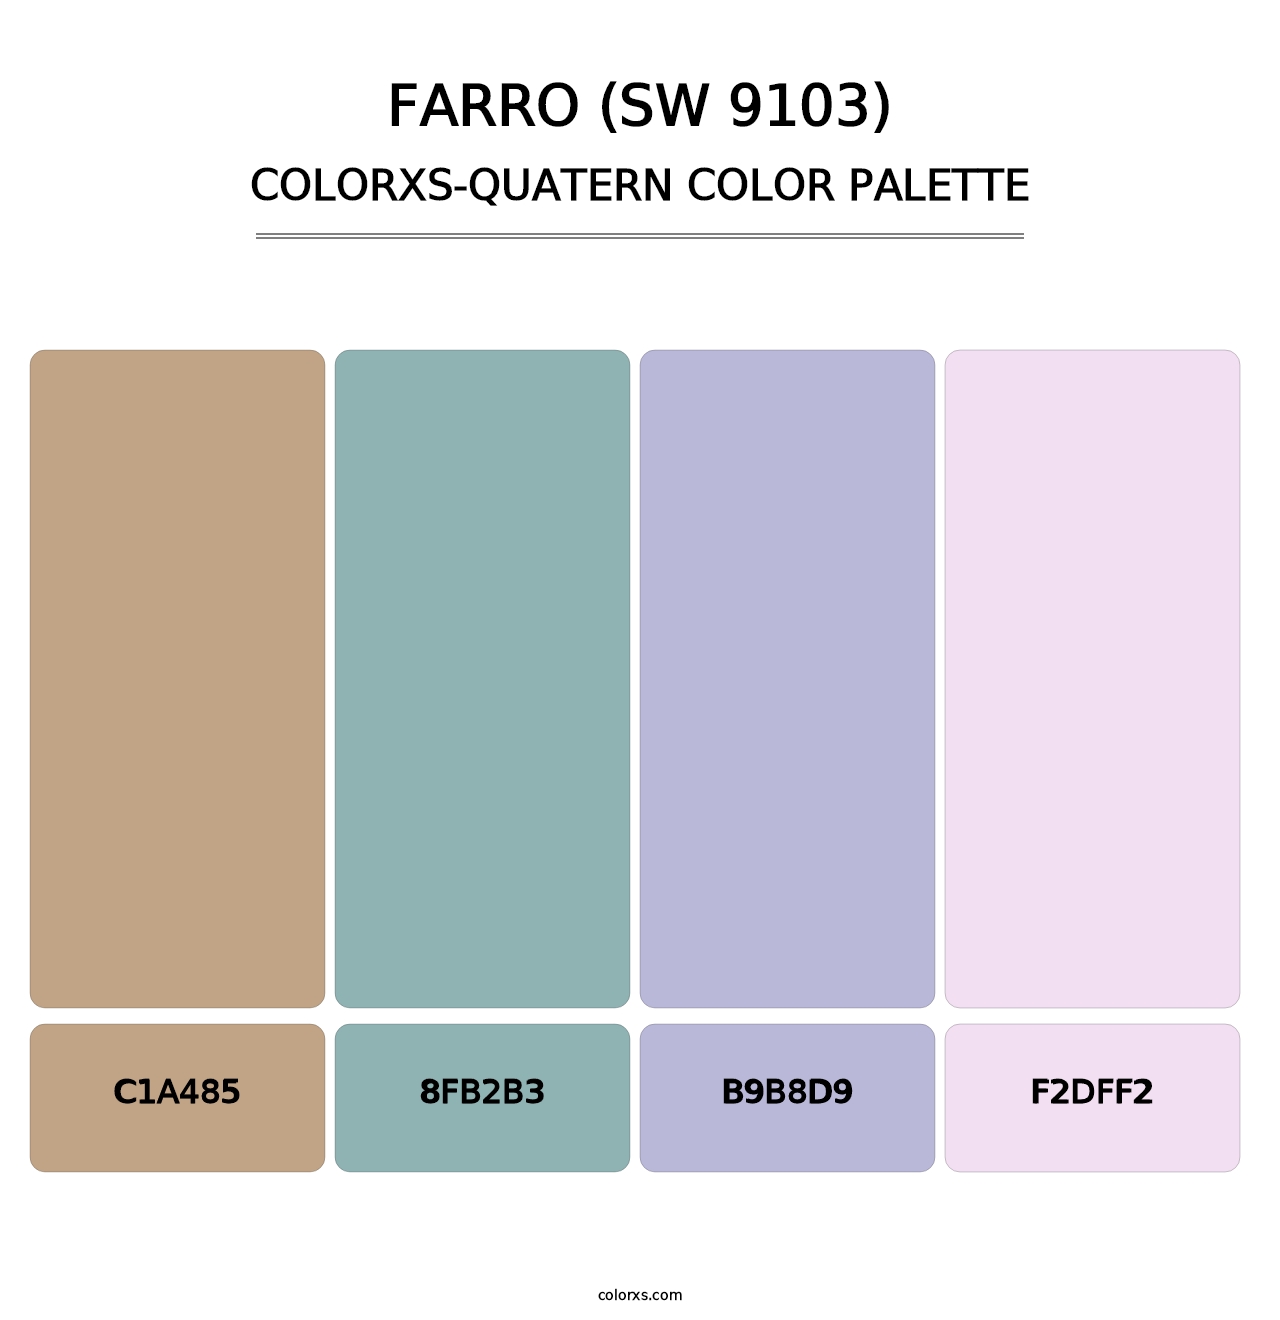 Farro (SW 9103) - Colorxs Quatern Palette